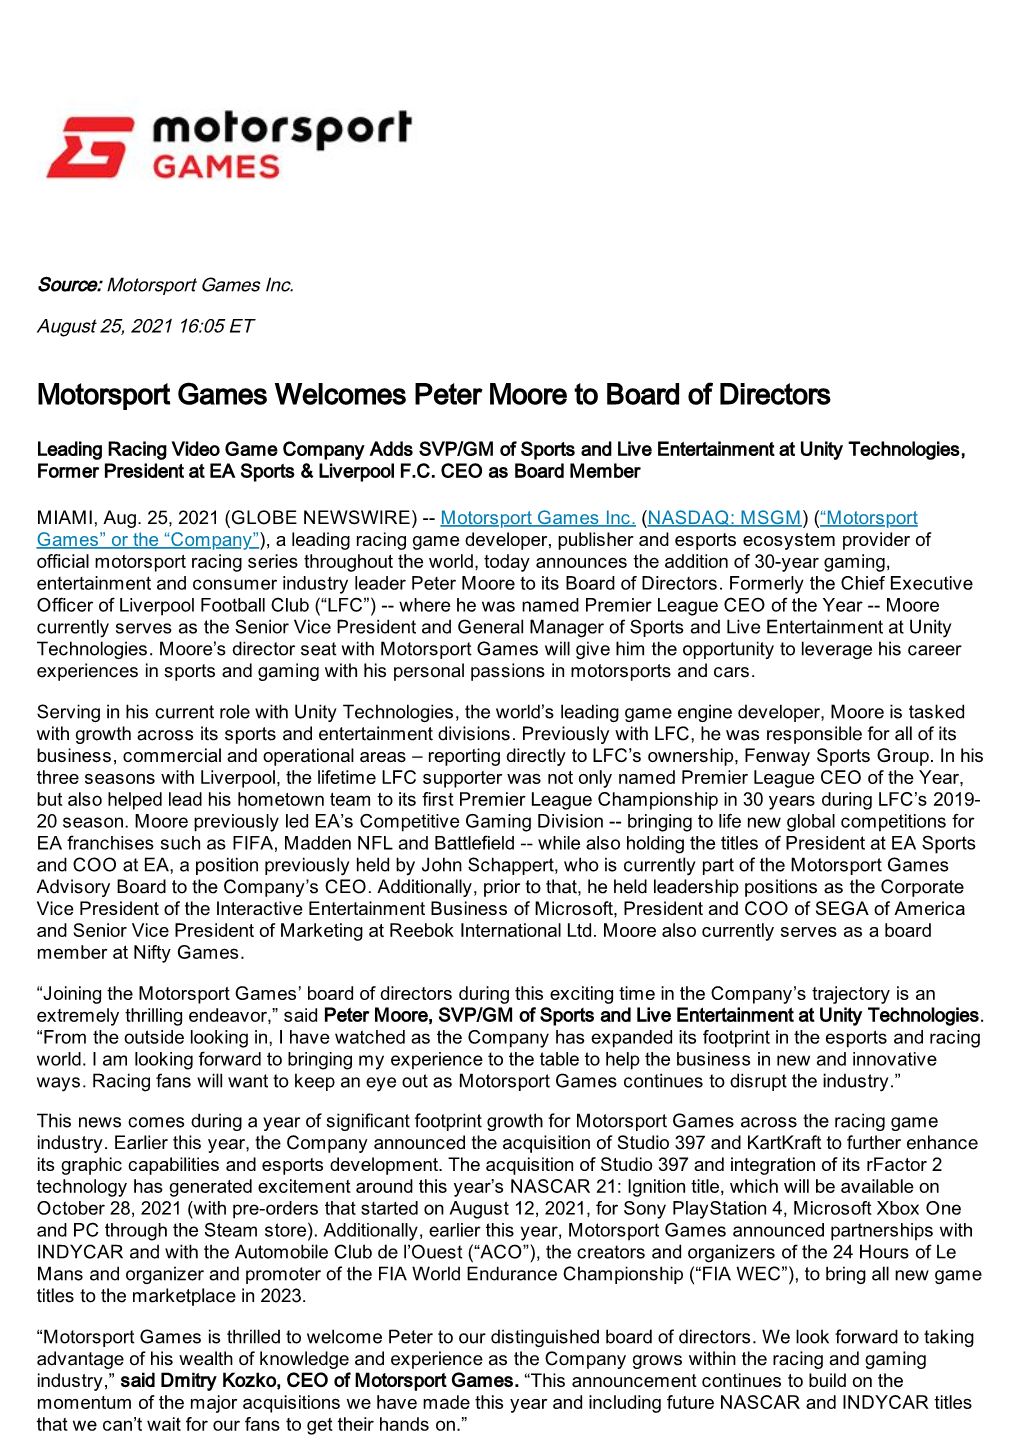 Motorsport Games Welcomes Peter Moore to Board of Directors